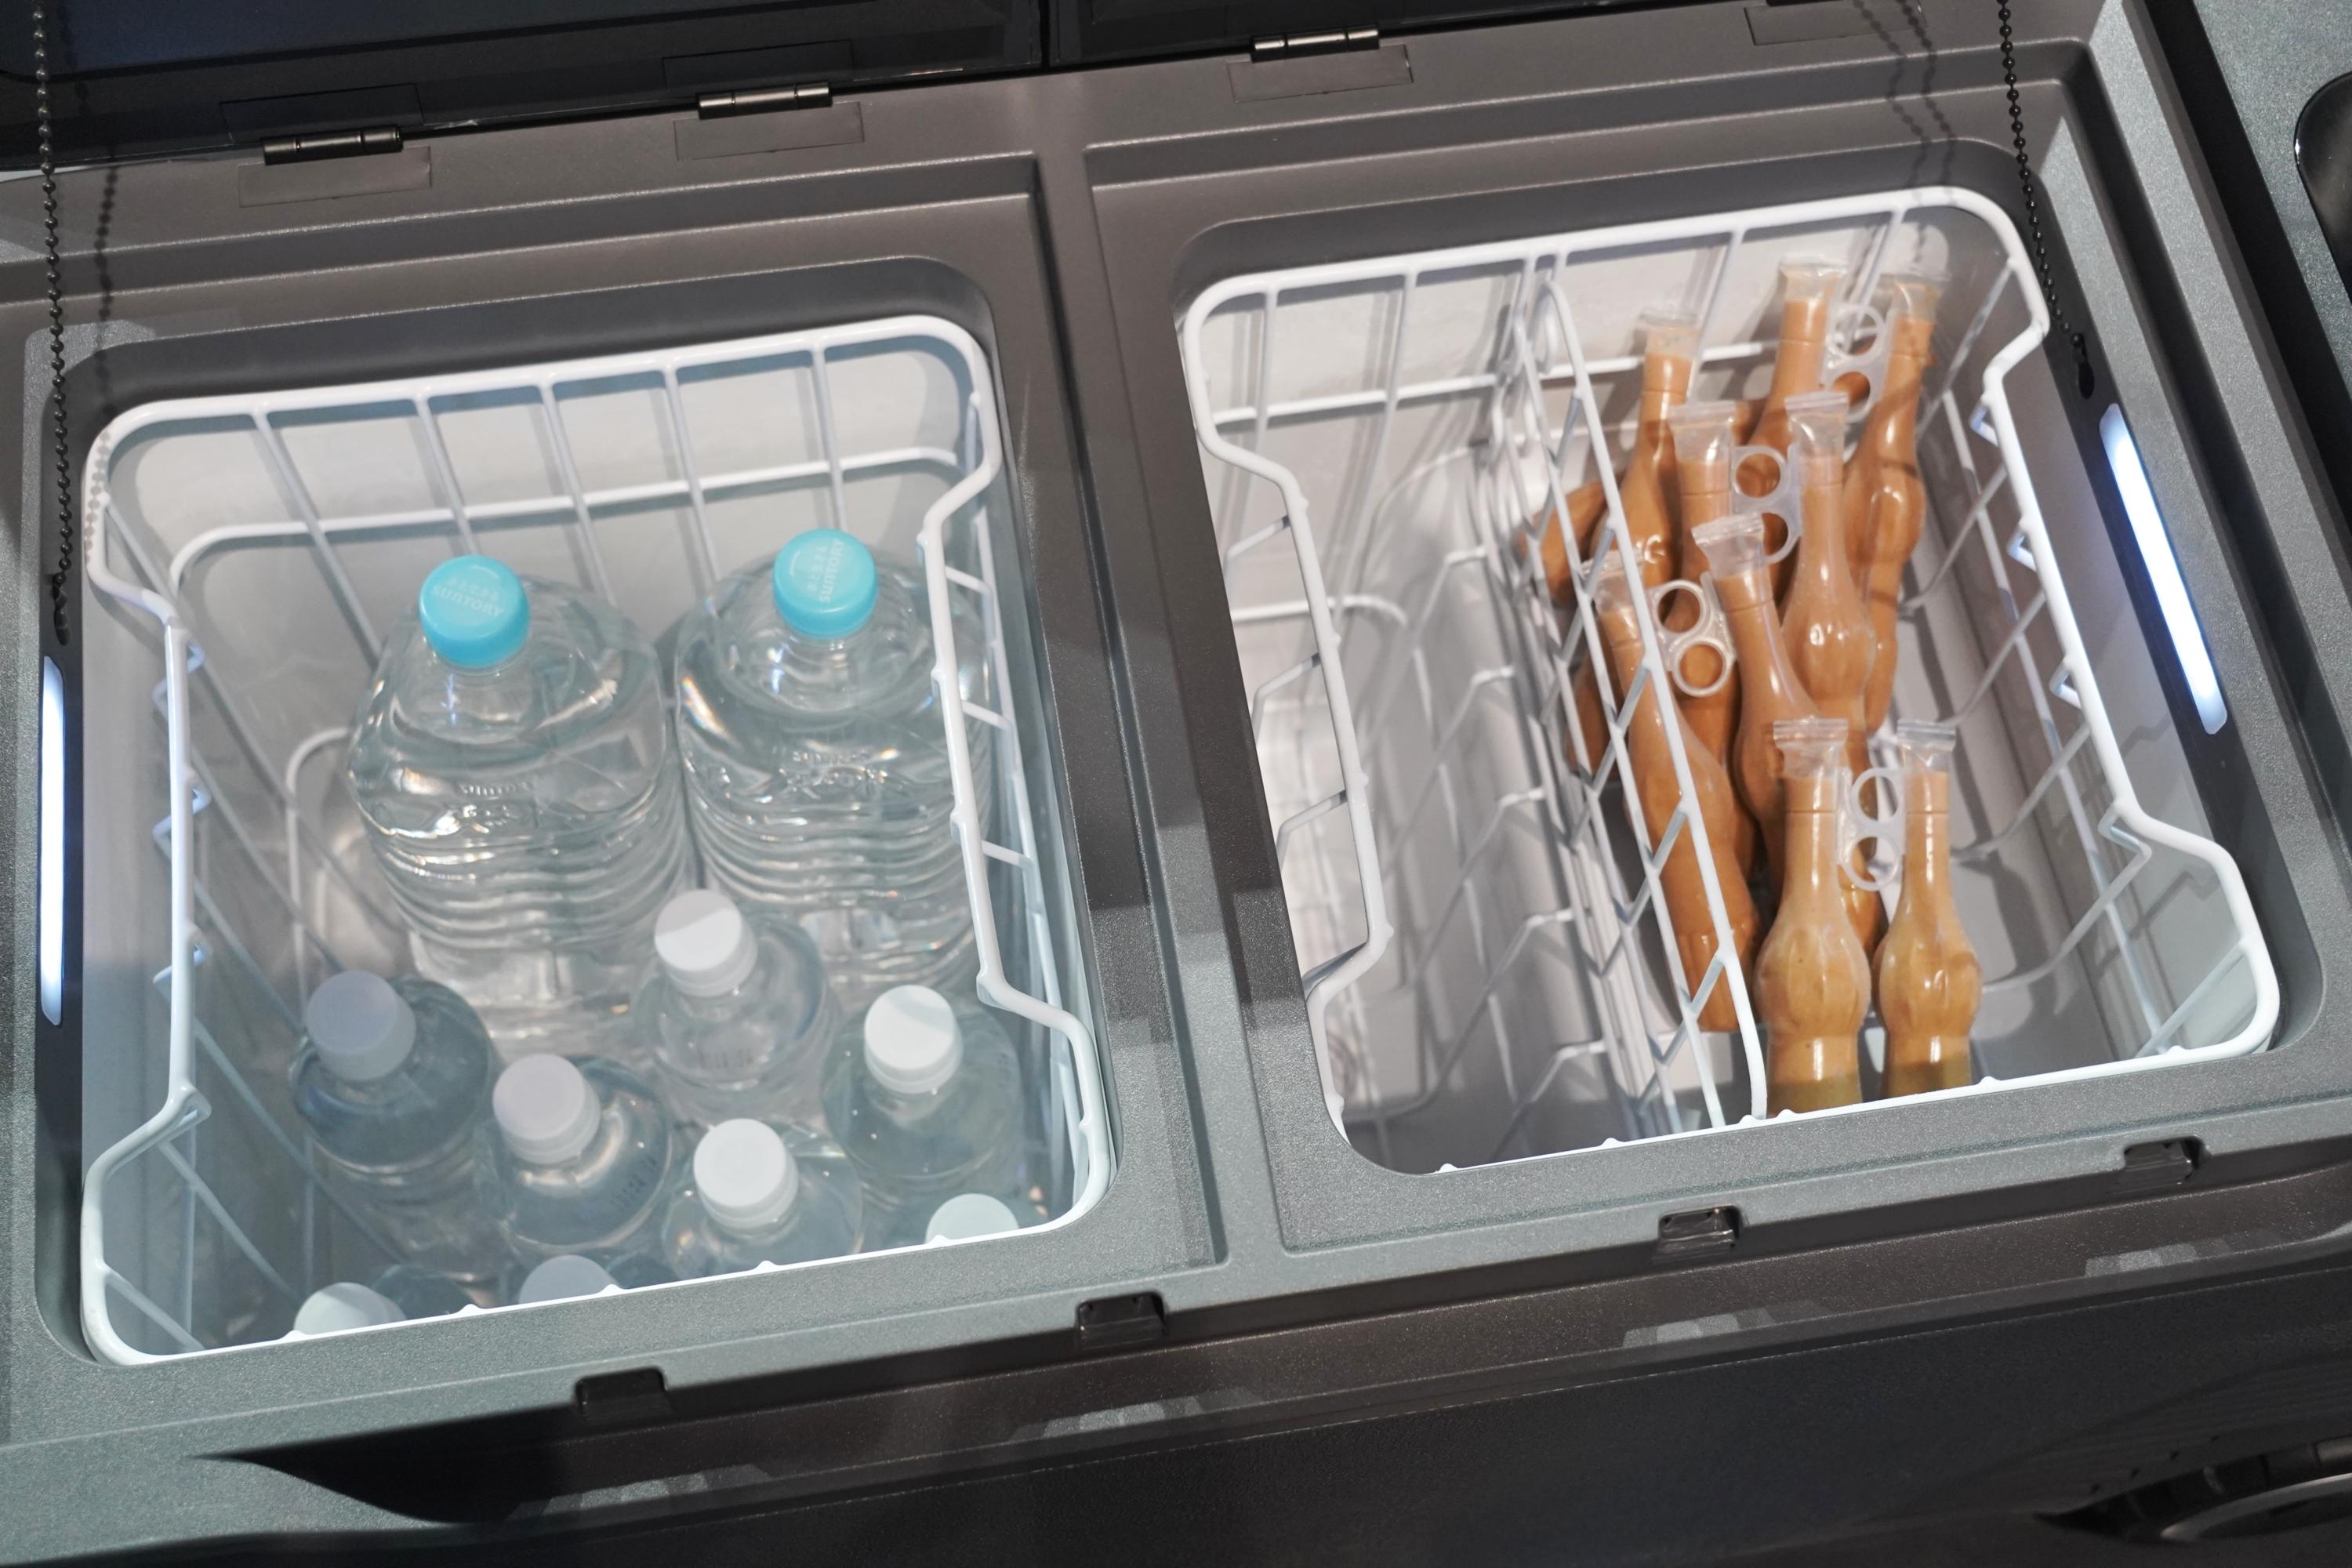 Ankerの新製品は、まさかの冷蔵庫！ マイナス20℃を持ち運ぼ 